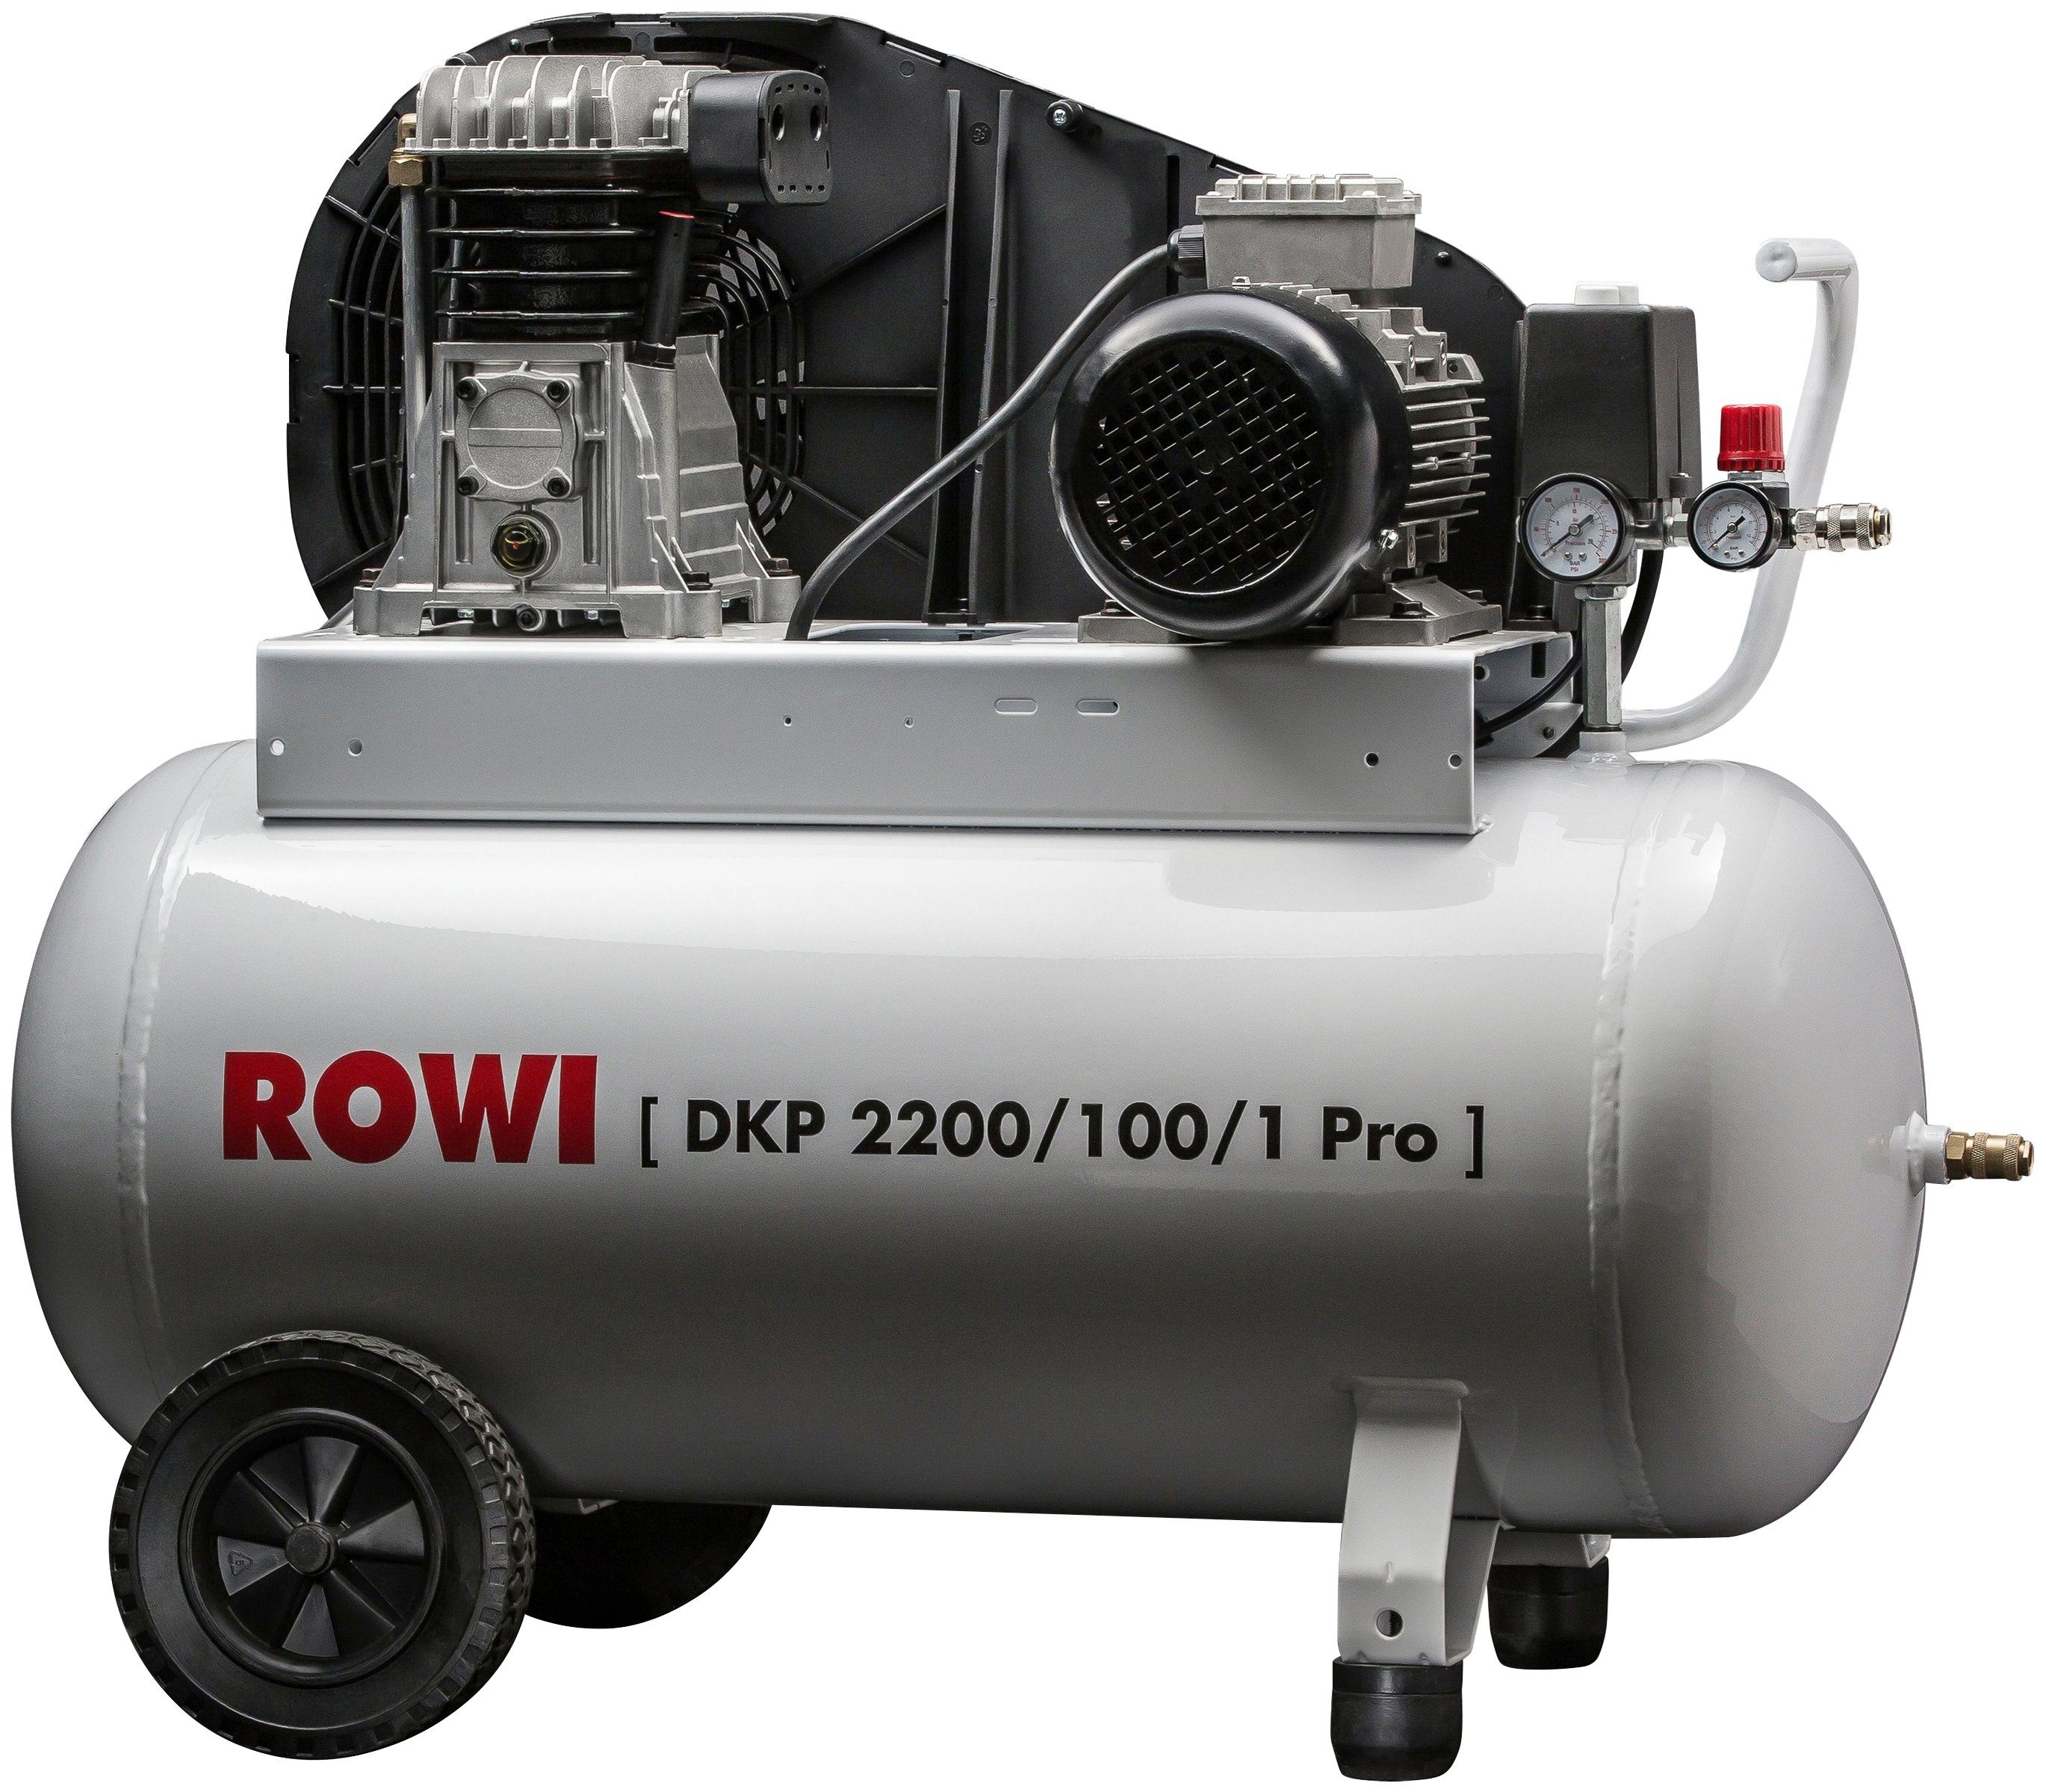 ROWI Kompressor DKP 2200/100/1 Pro, 2200 W, max. 10 bar, 100 l, Packung | Druckluftgeräte